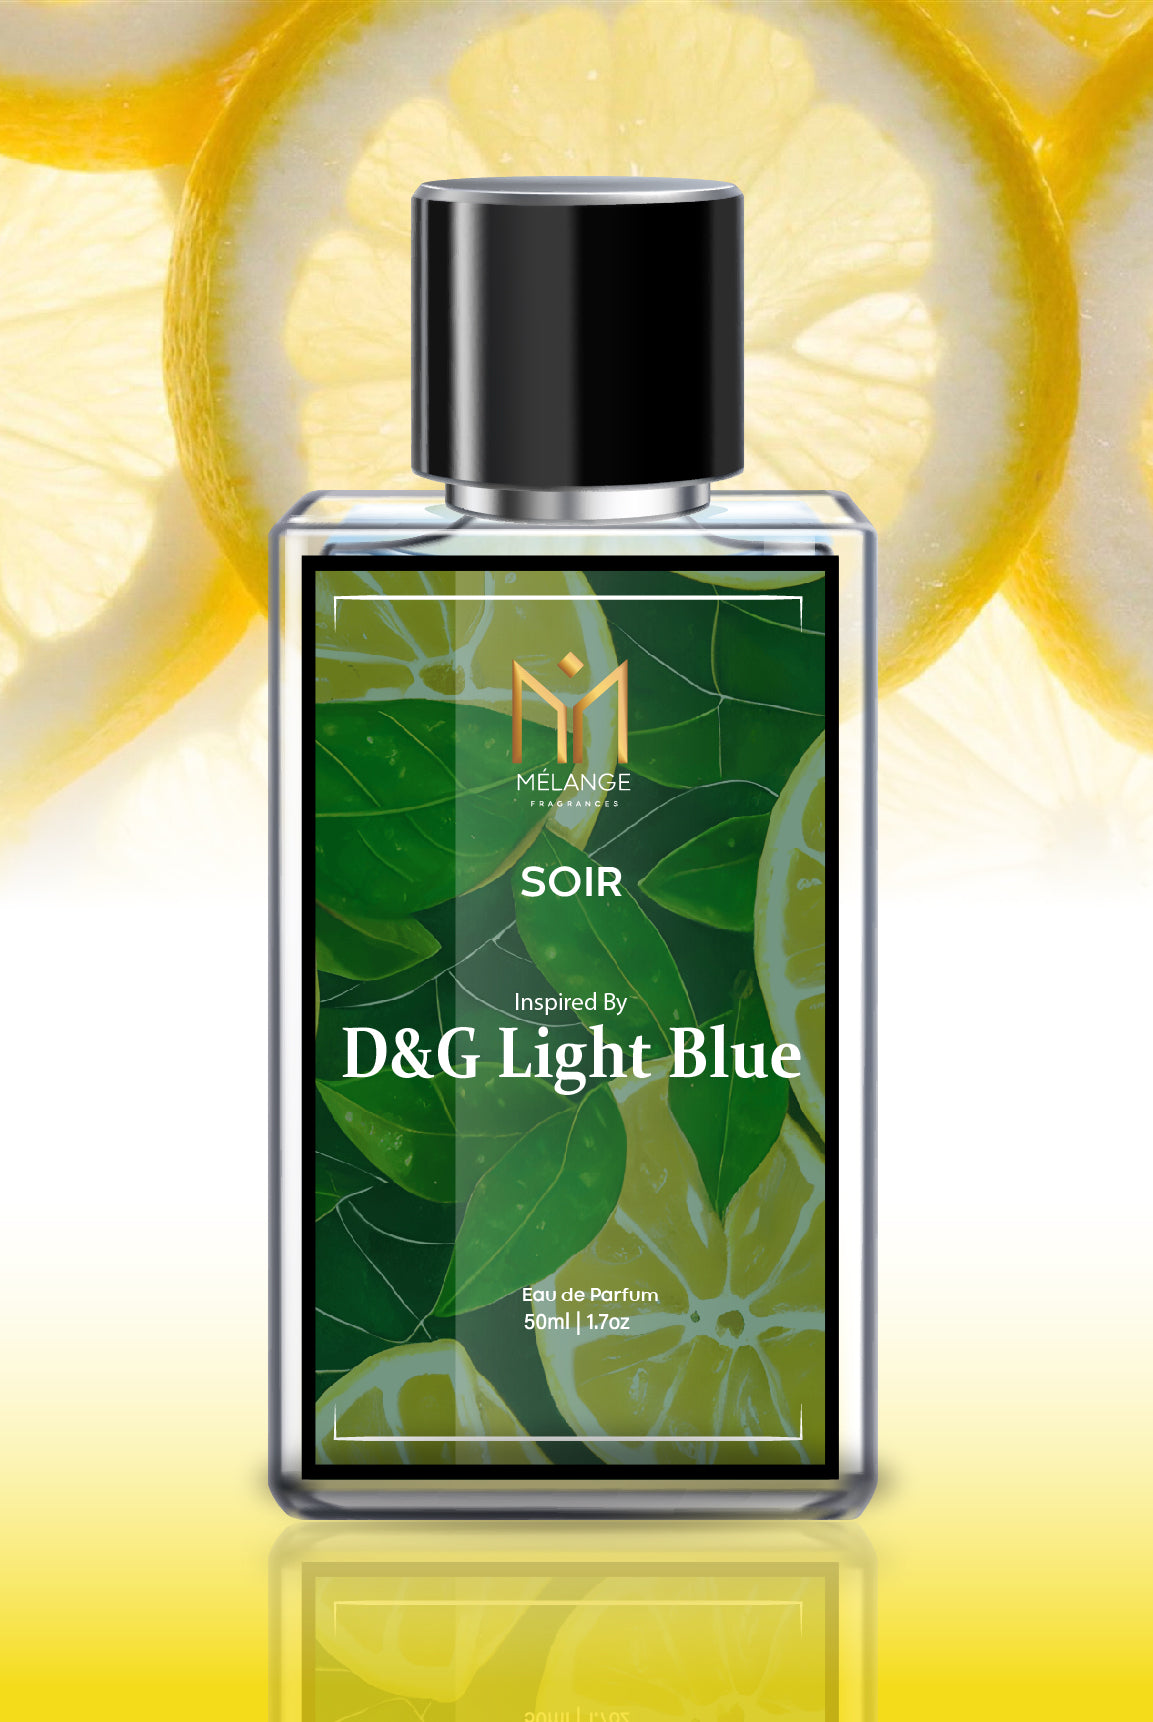 SOIR- Inspired By D&G Light Blue